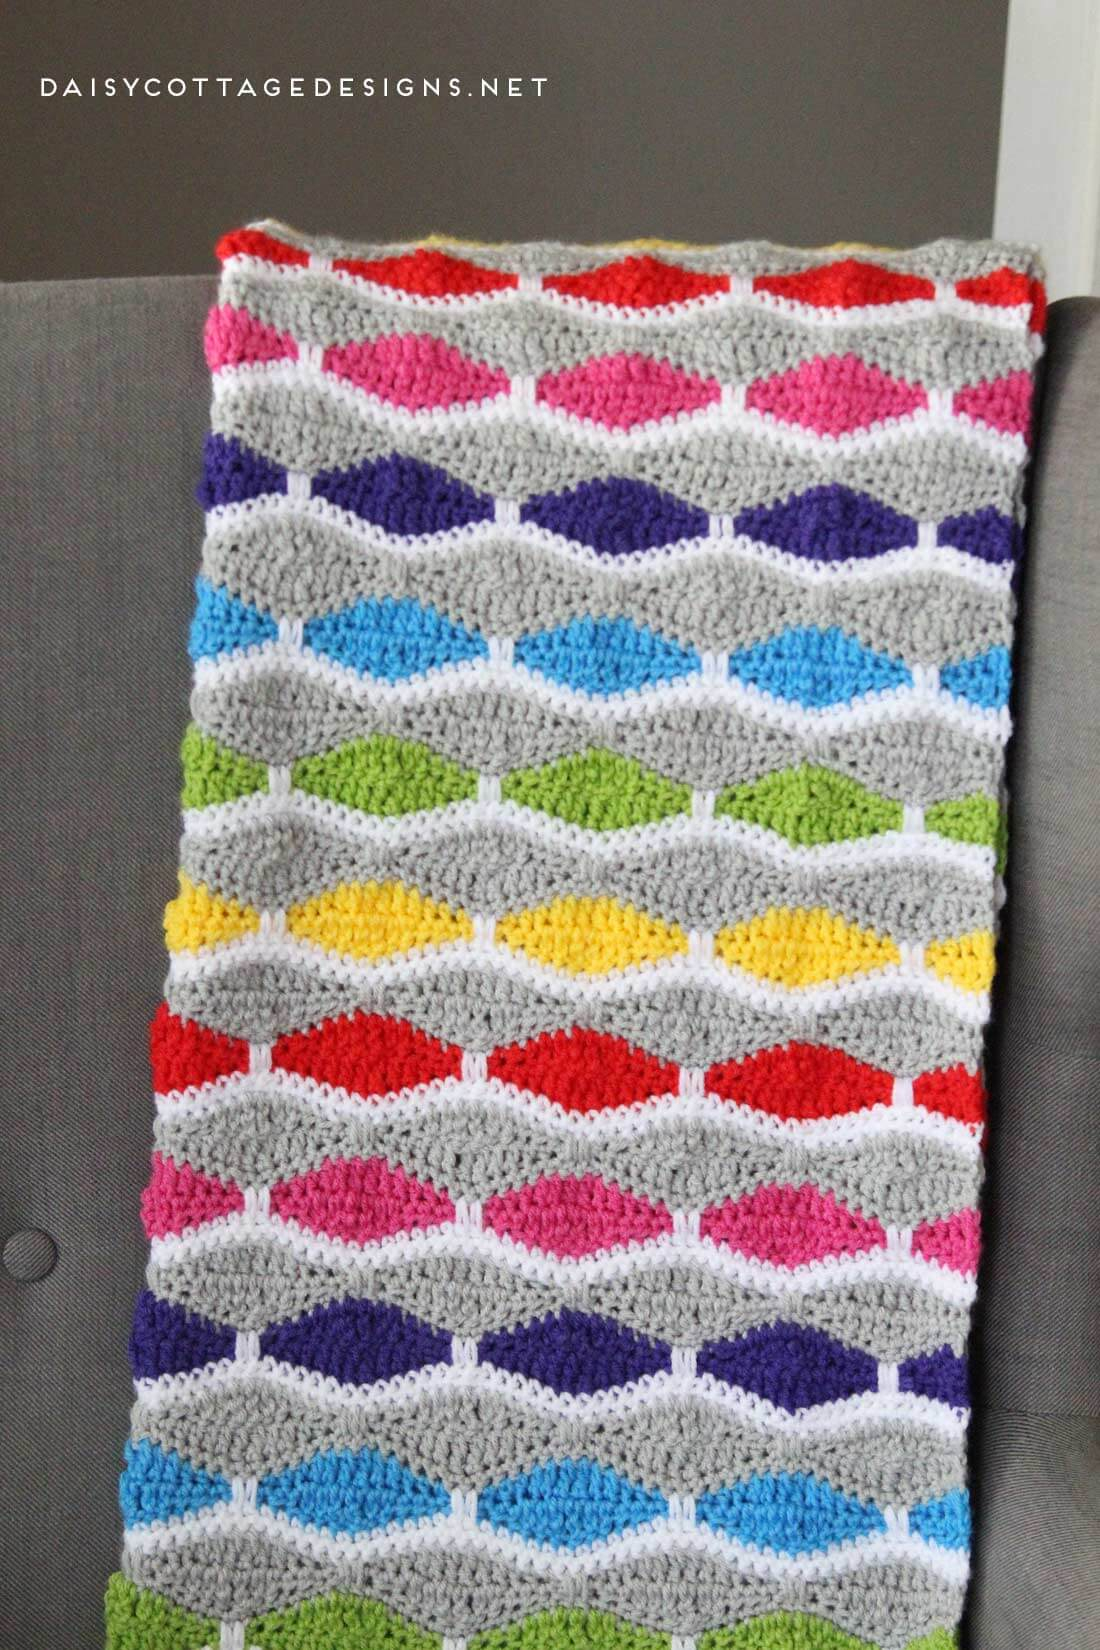 Free Crochet Afghan Pattern Crochet Blanket Pattern A Bright Fun Free Crochet Pattern Daisy